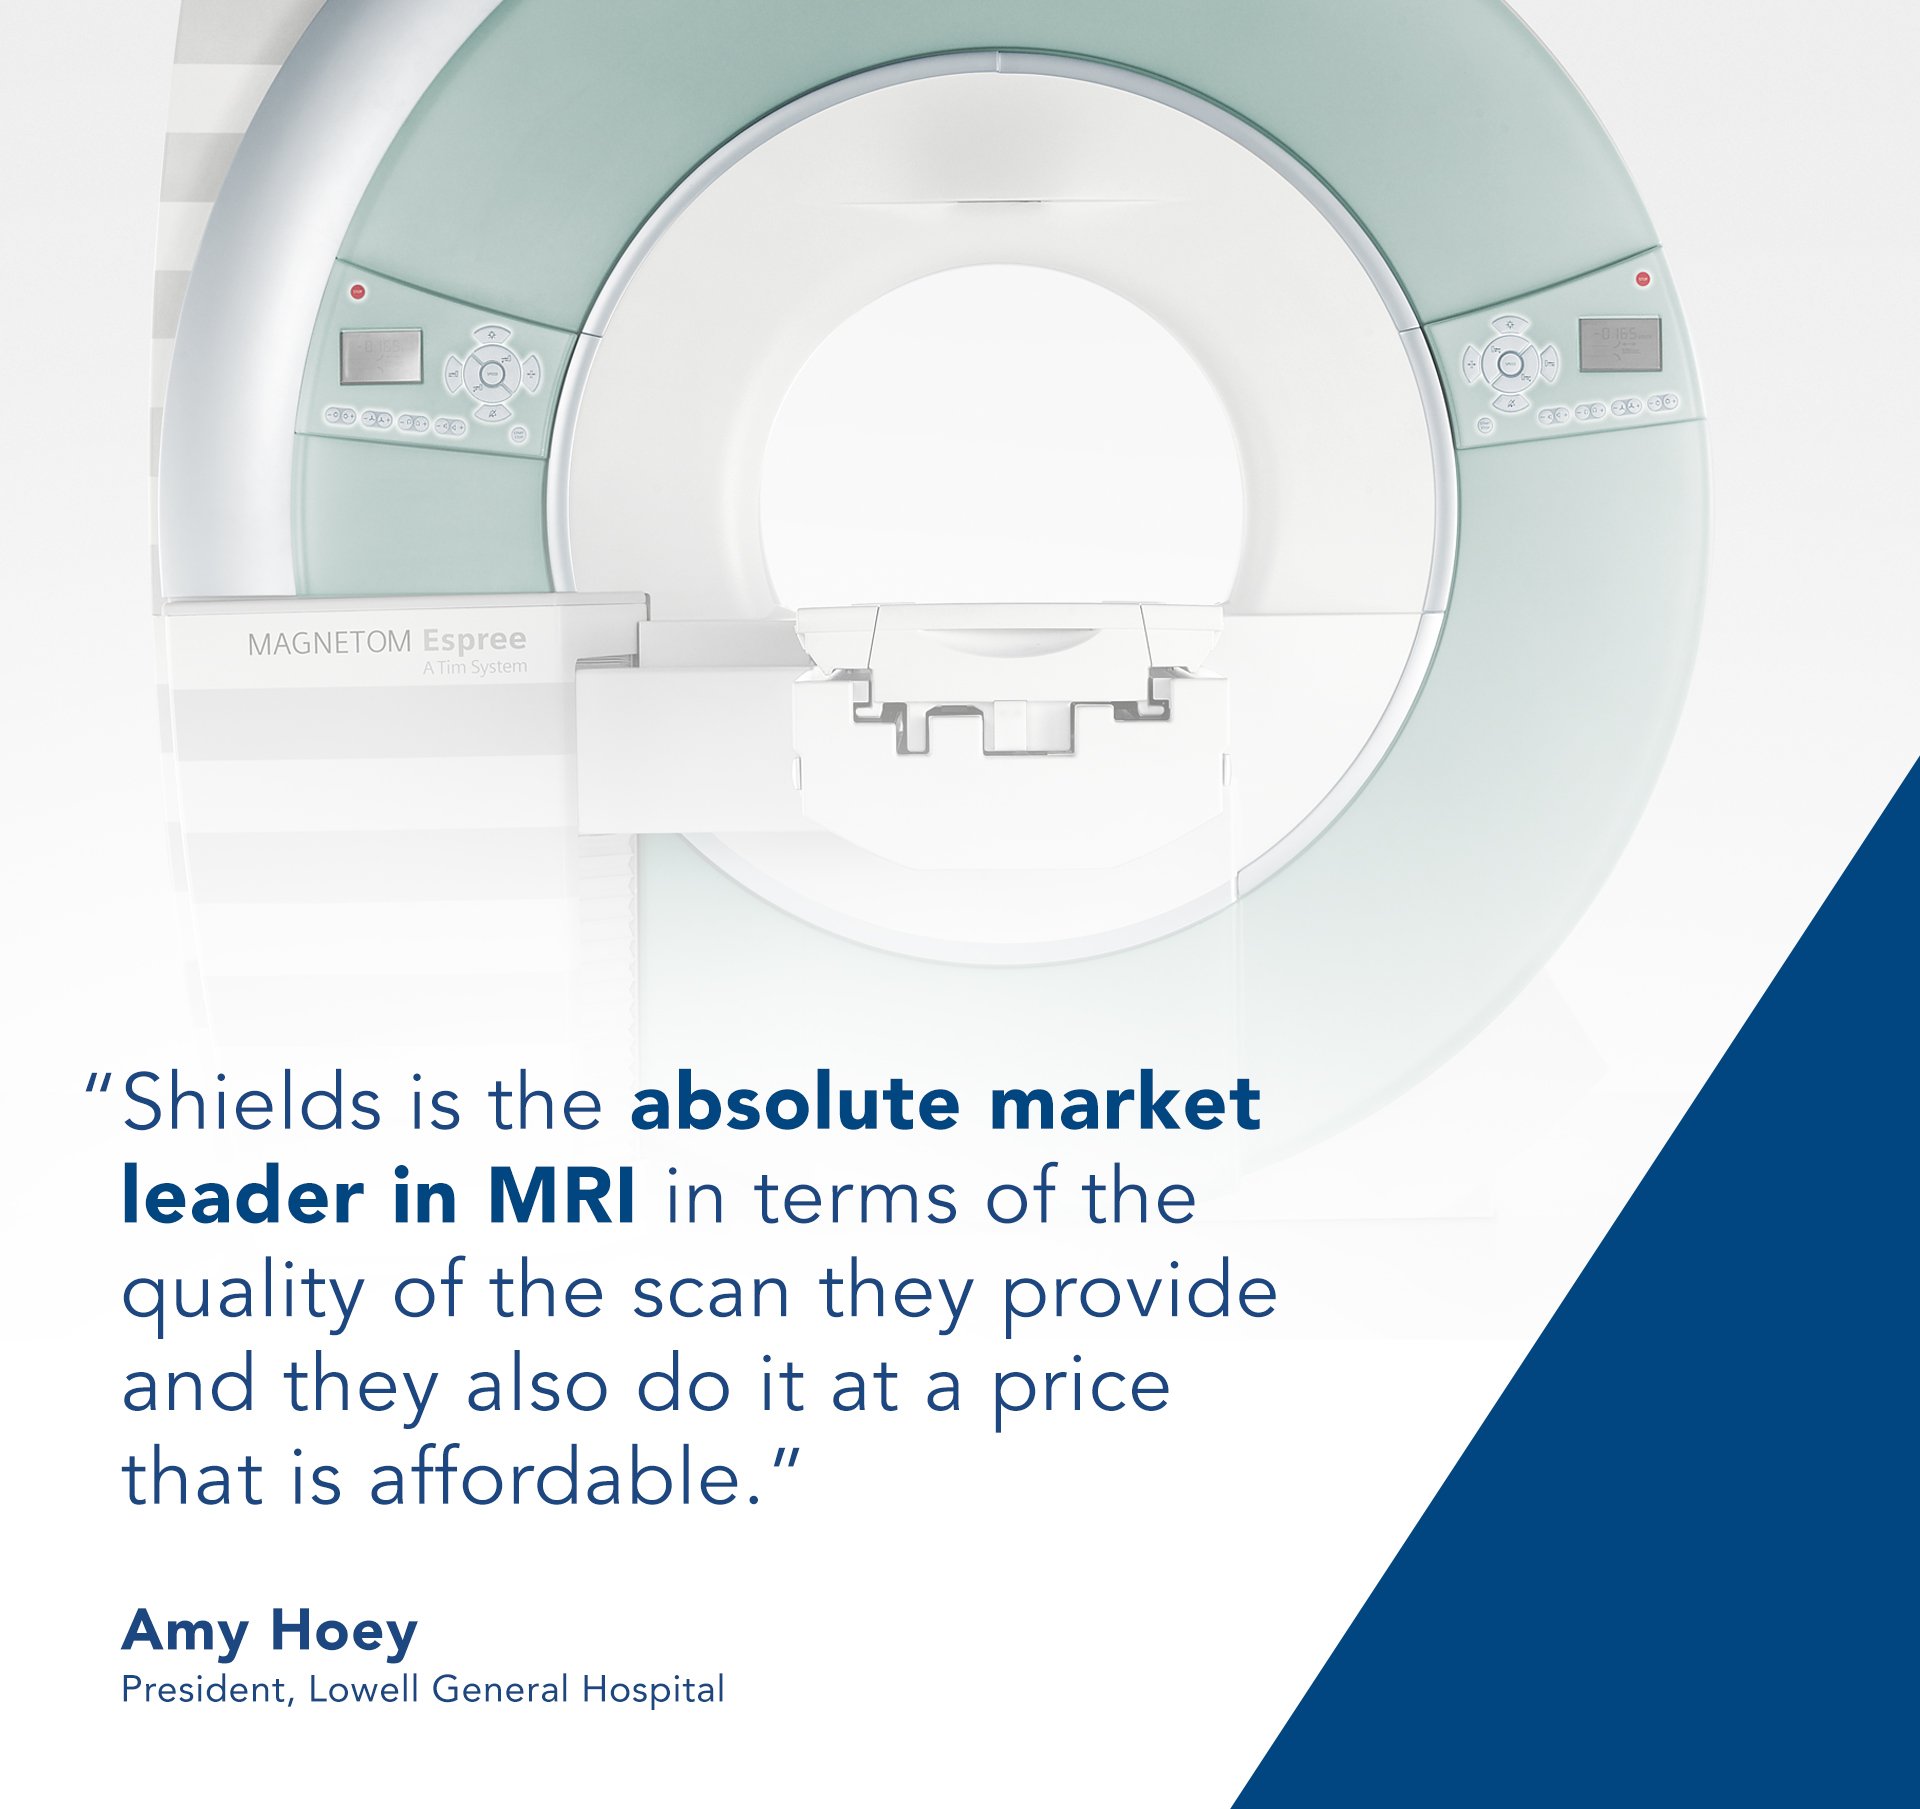 Leader in MRI